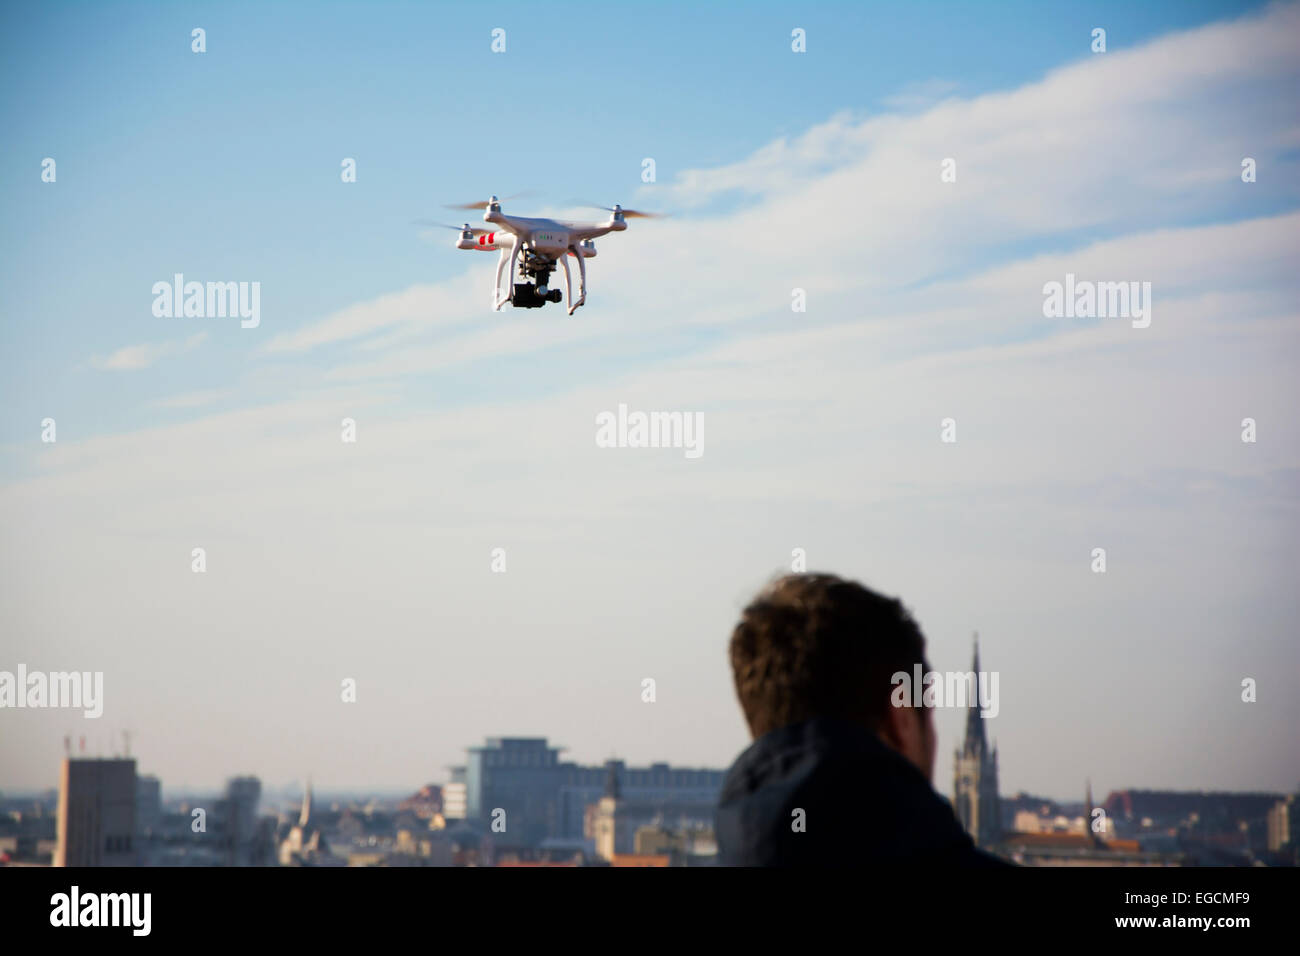 Drone contrôlé par un homme volant au-dessus de la ville Banque D'Images